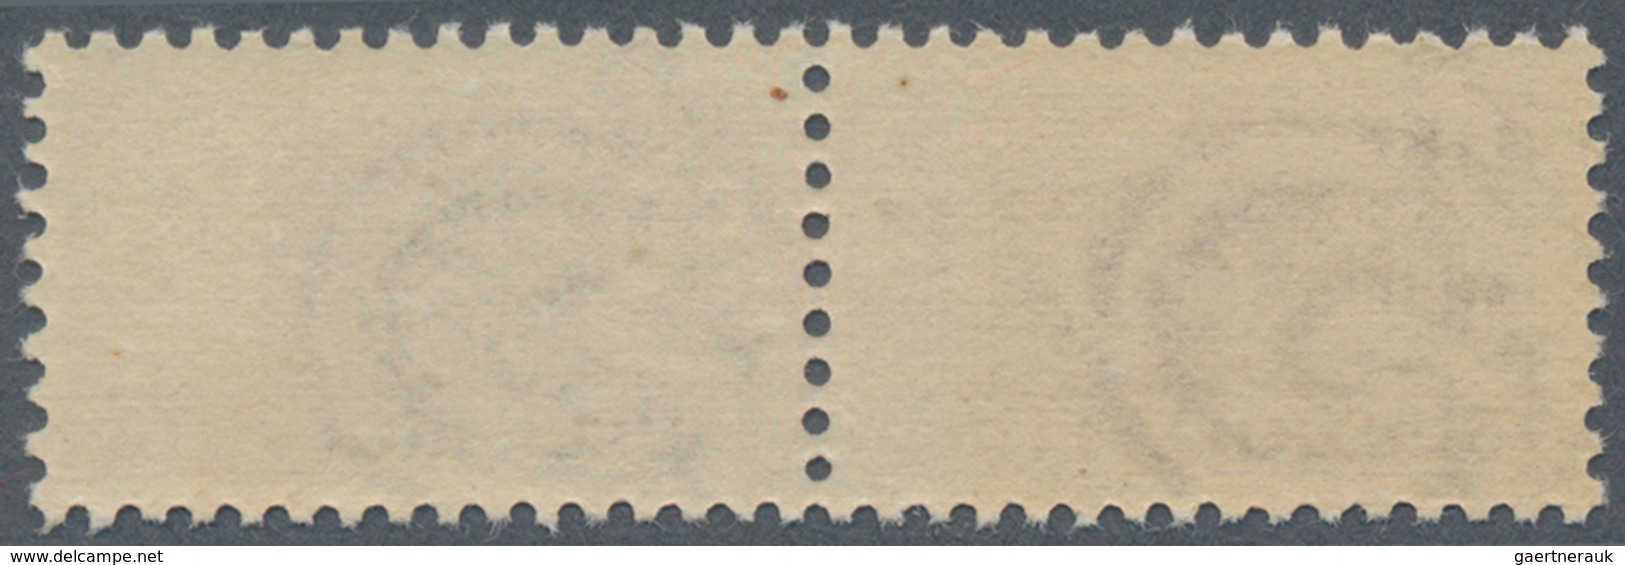 Italien - Paketmarken: 1948, 300 L Brownish Purple Mint Never Hinged (Sass. 1 500 €, Michel 2 200 €) - Paketmarken